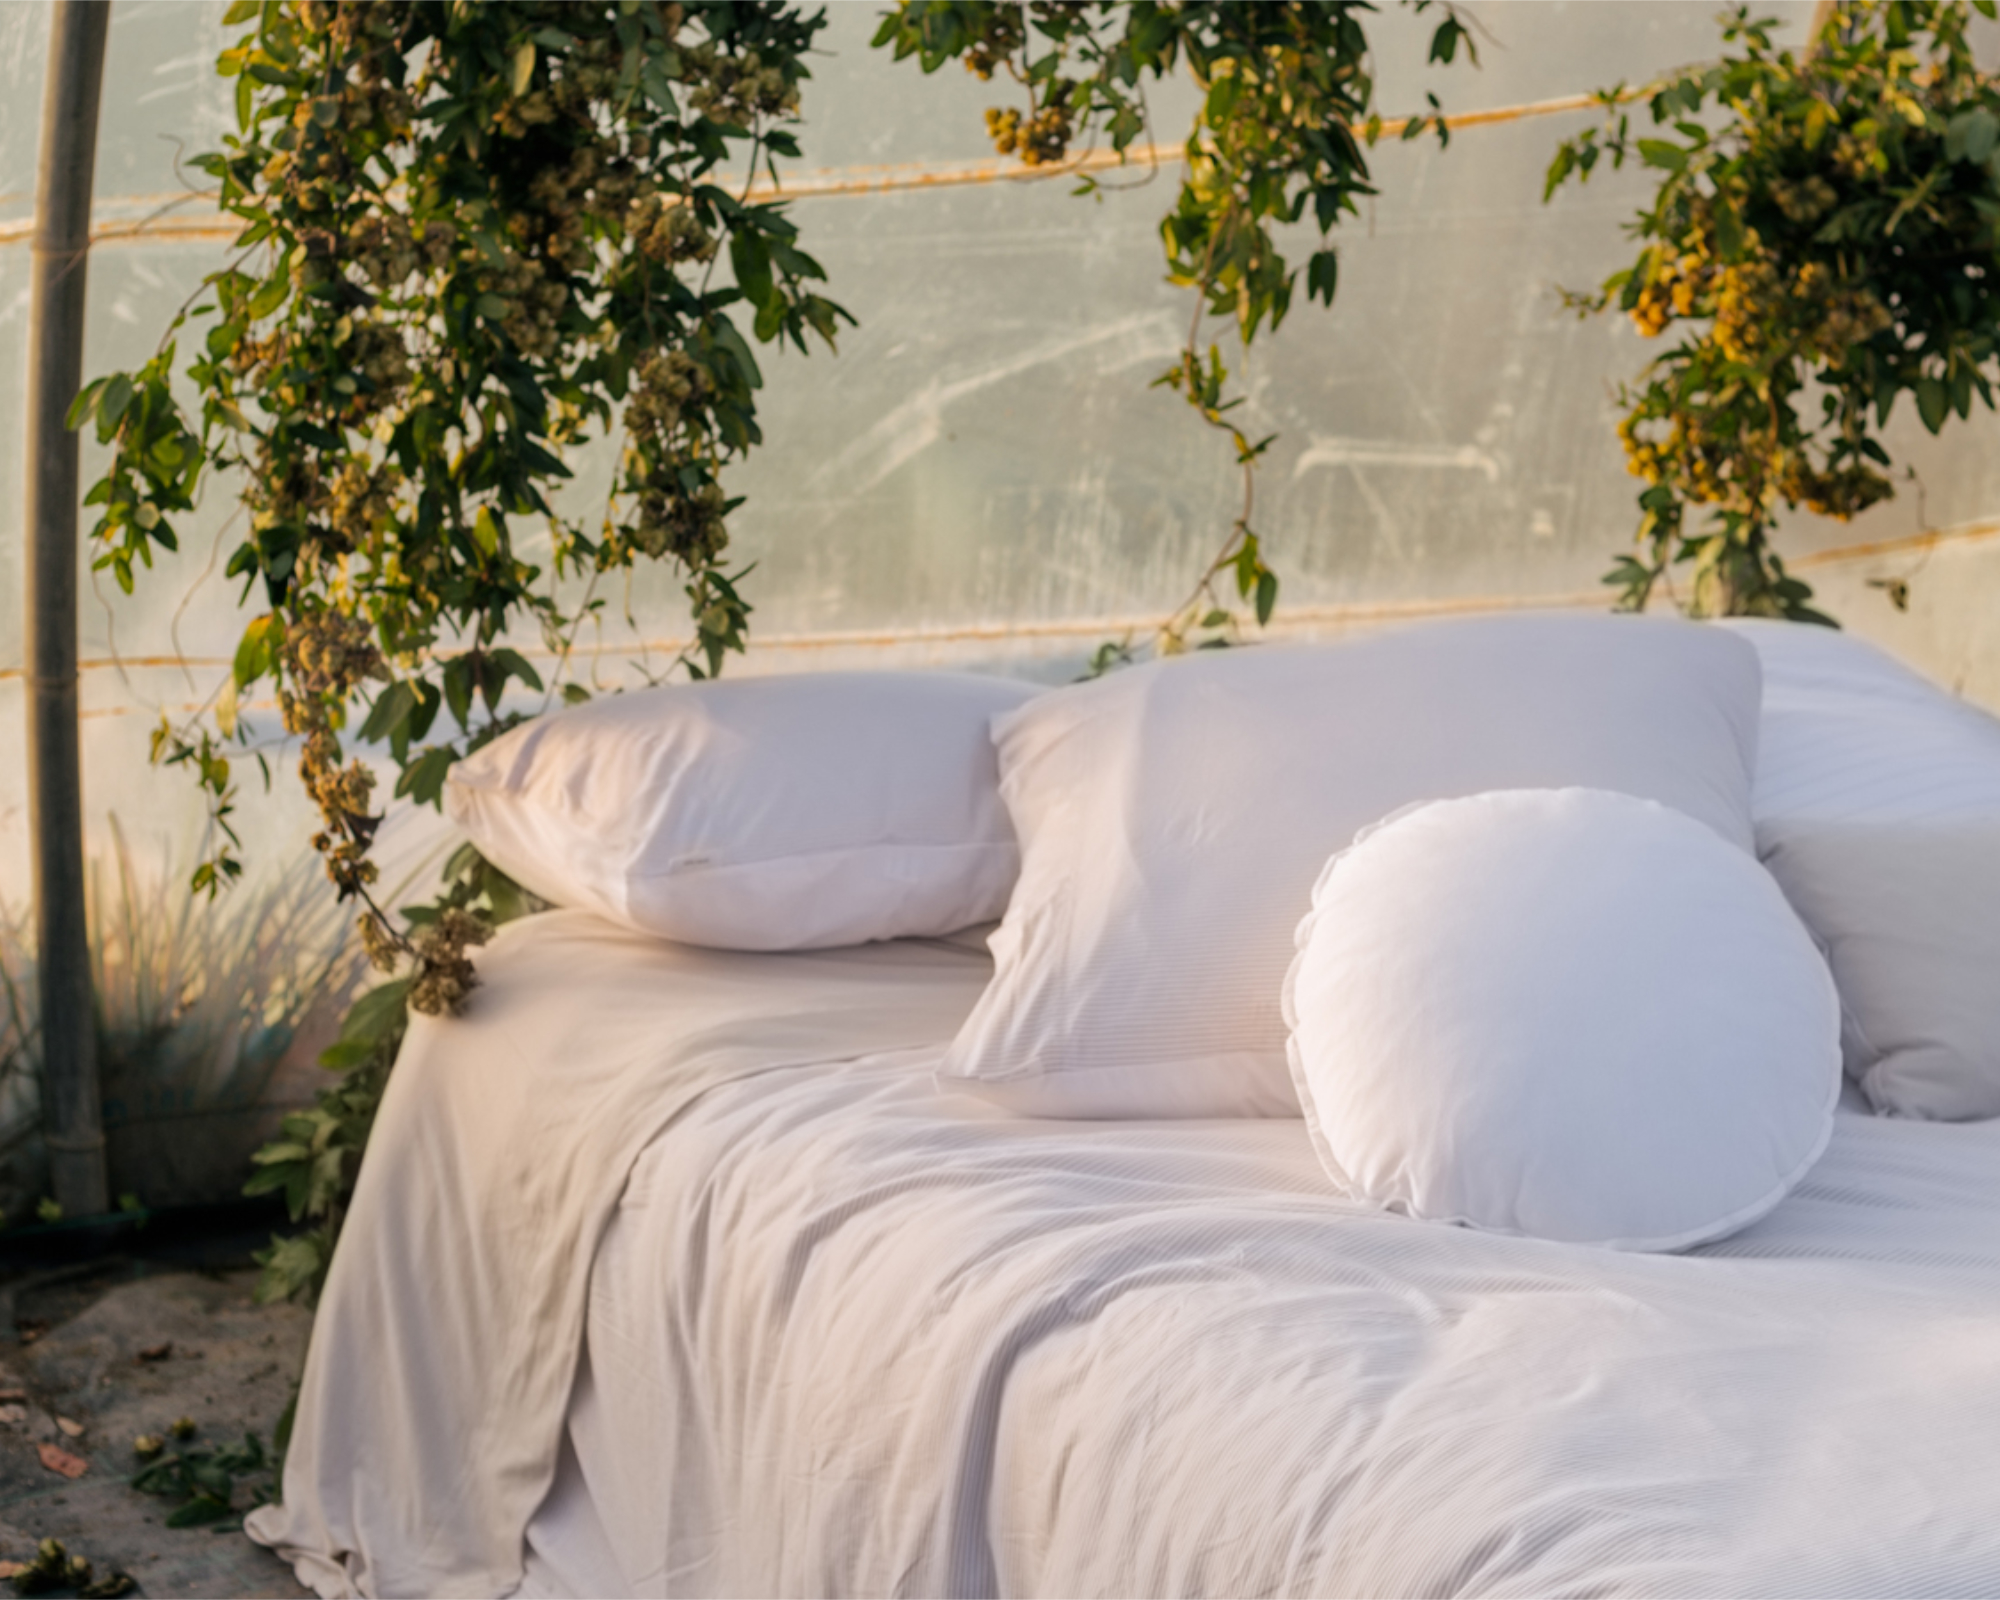 Mikmax - Bed linen set CALA - 260x240 cm + 2 slopen 65x65 cm - White/Beige